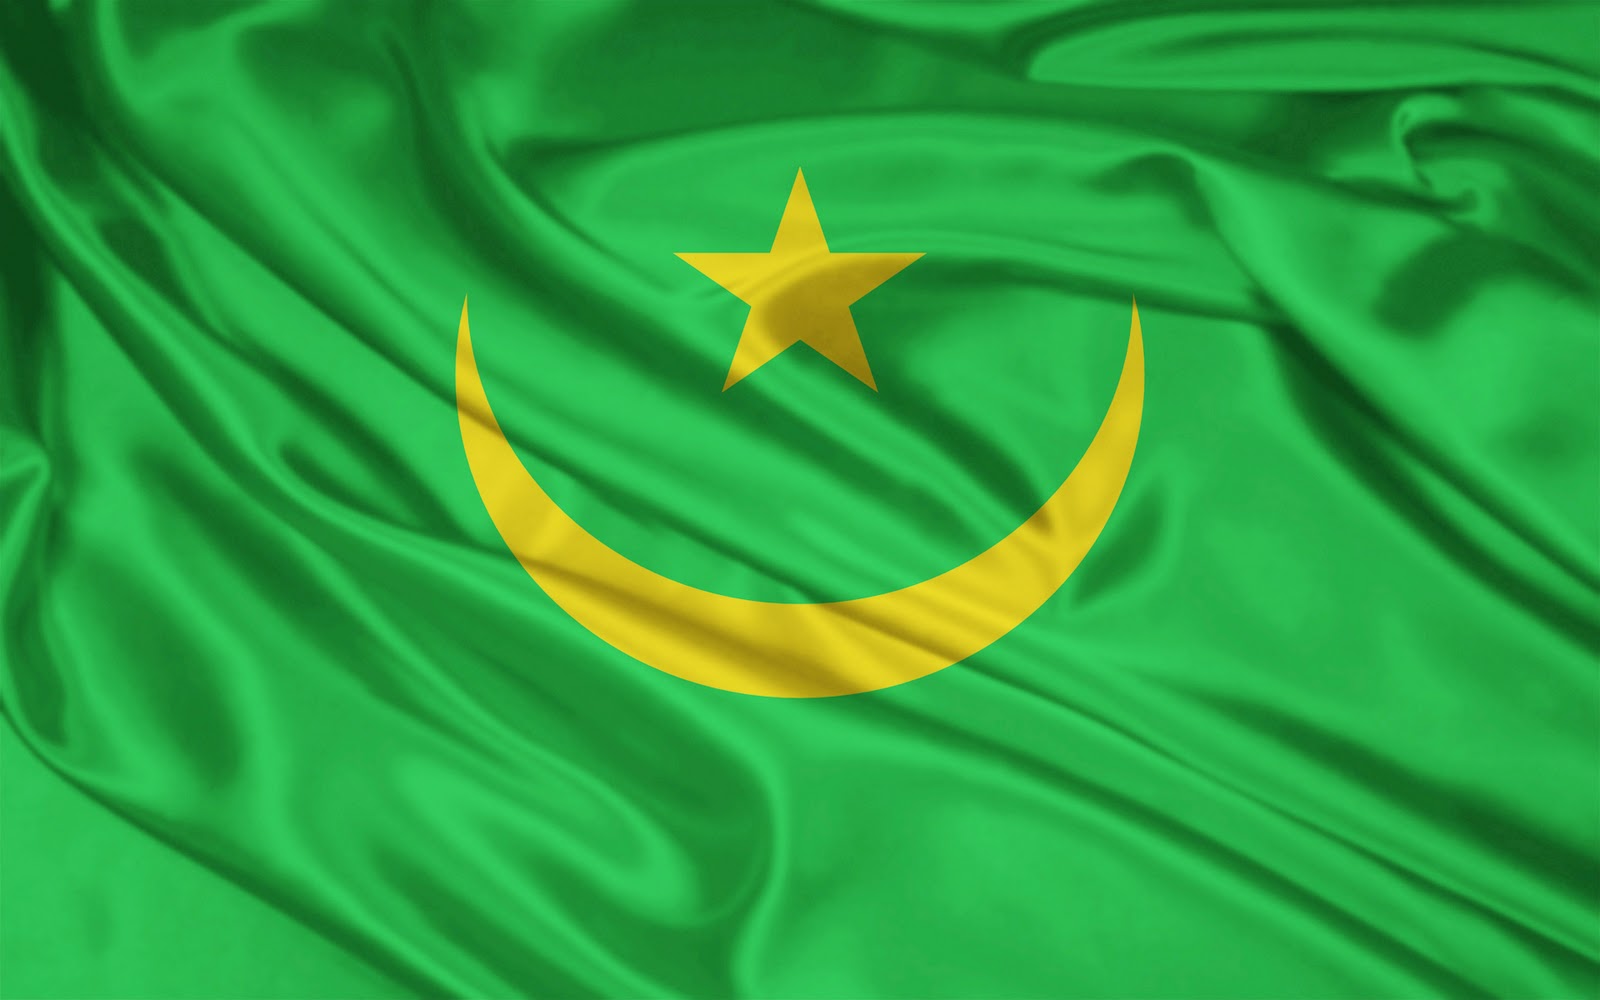   موريتانيا تحتضن "اليوم الإفريقي للبيئة"